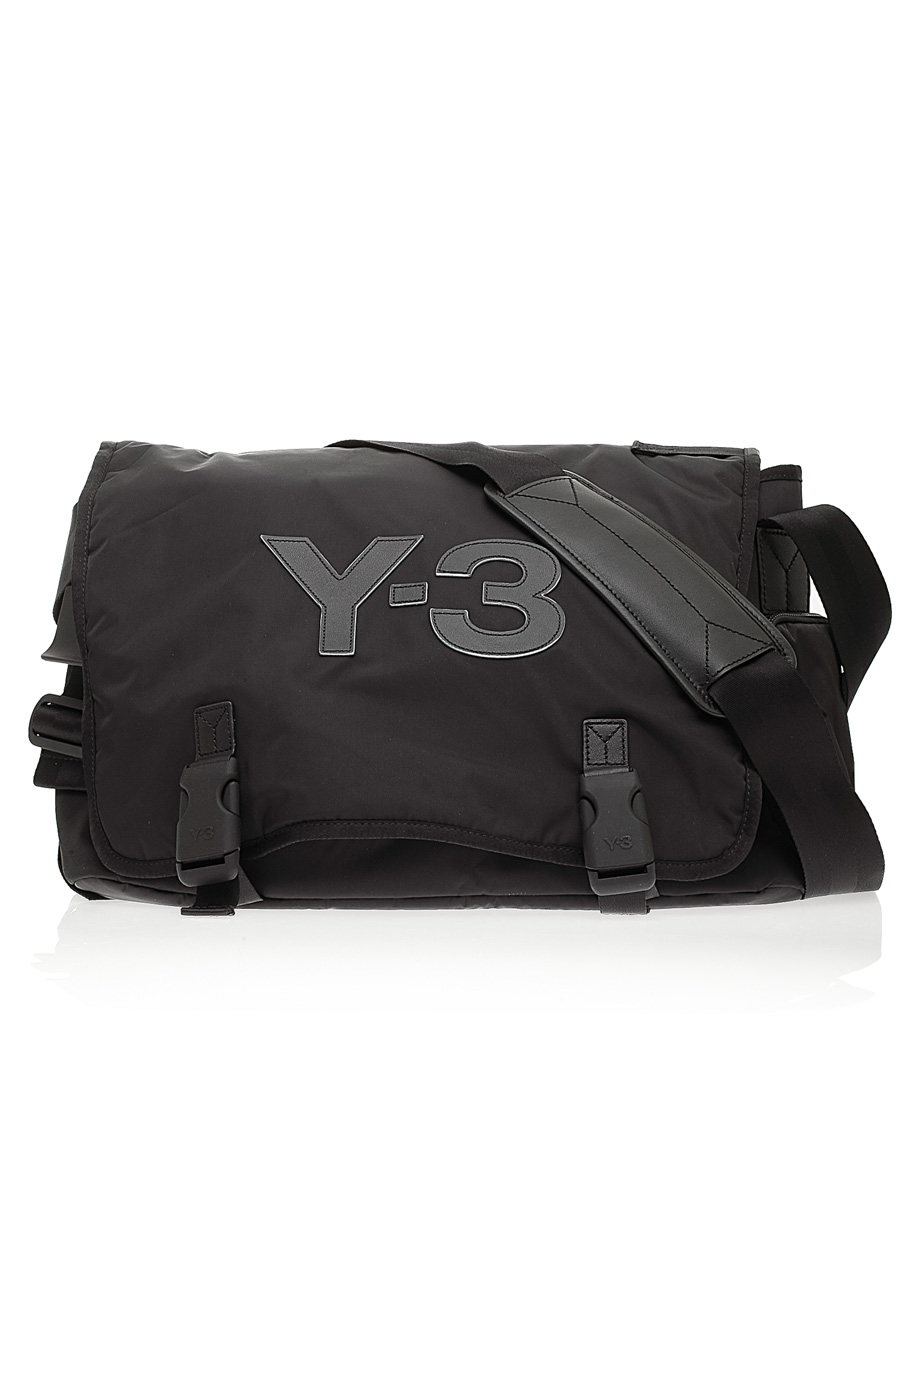 Lyst - Y-3 Logo Messenger Bag in Black